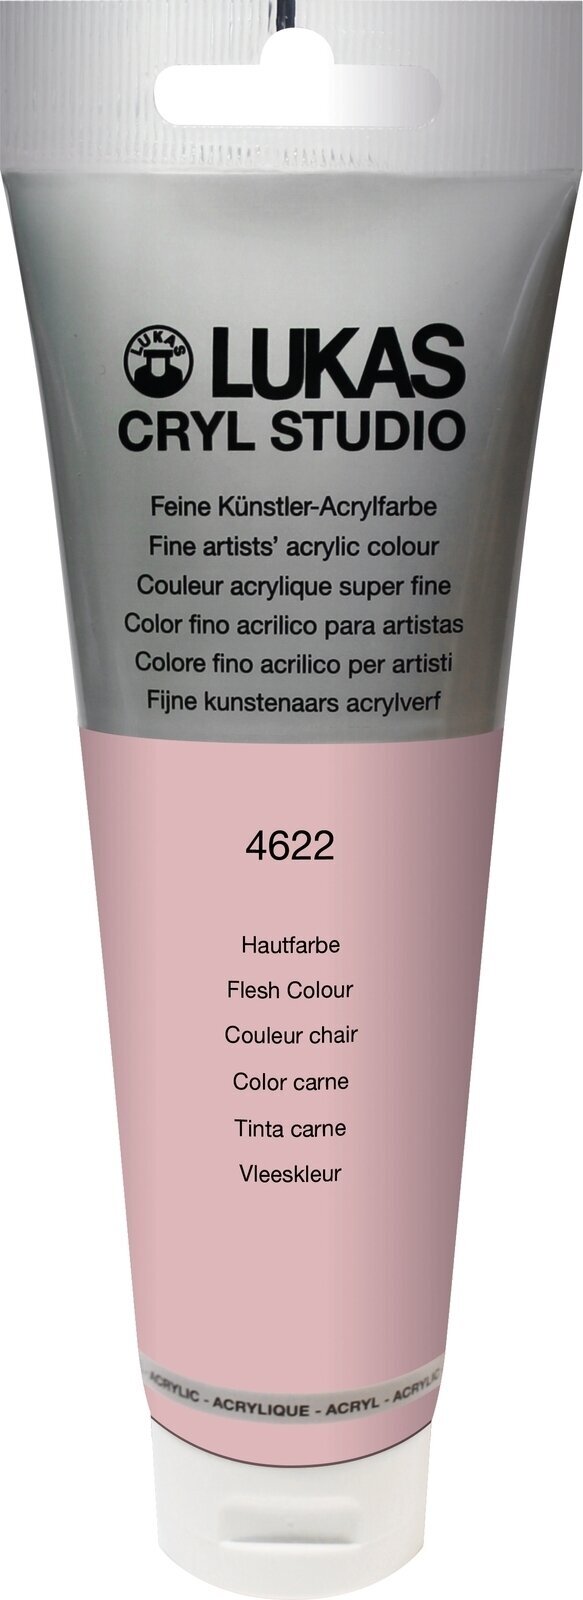 Acrylfarbe Lukas Cryl Studio Acrylic Paint Plastic Tube Acrylfarbe Peach Pink 125 ml 1 Stck